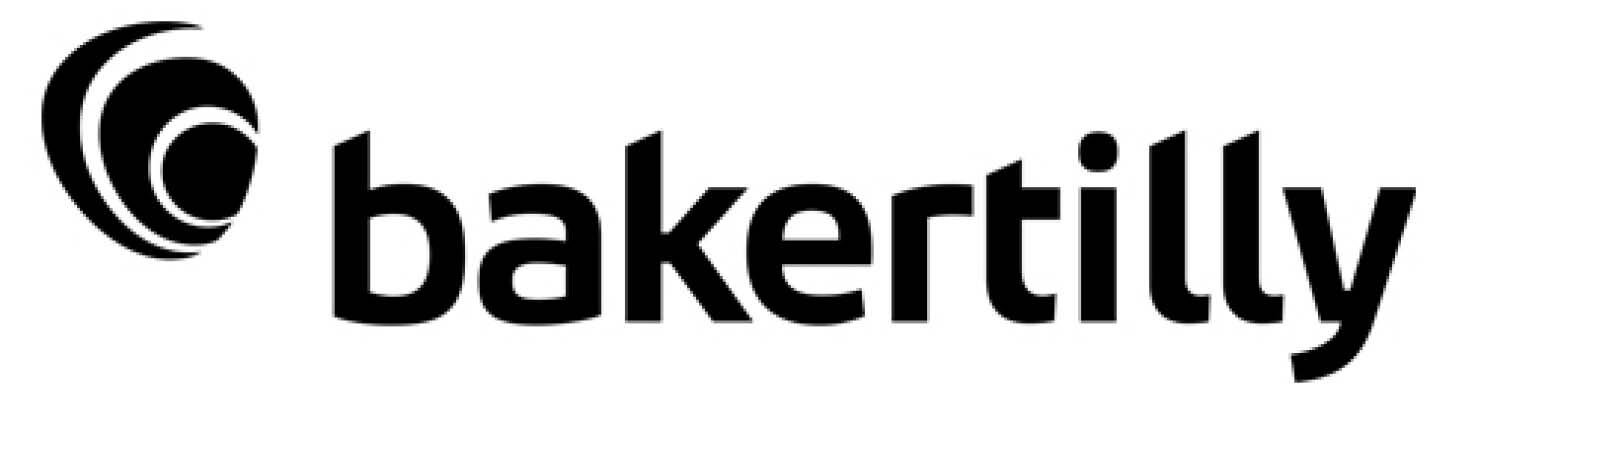 Baker-Tilly-badge-logo.jpg